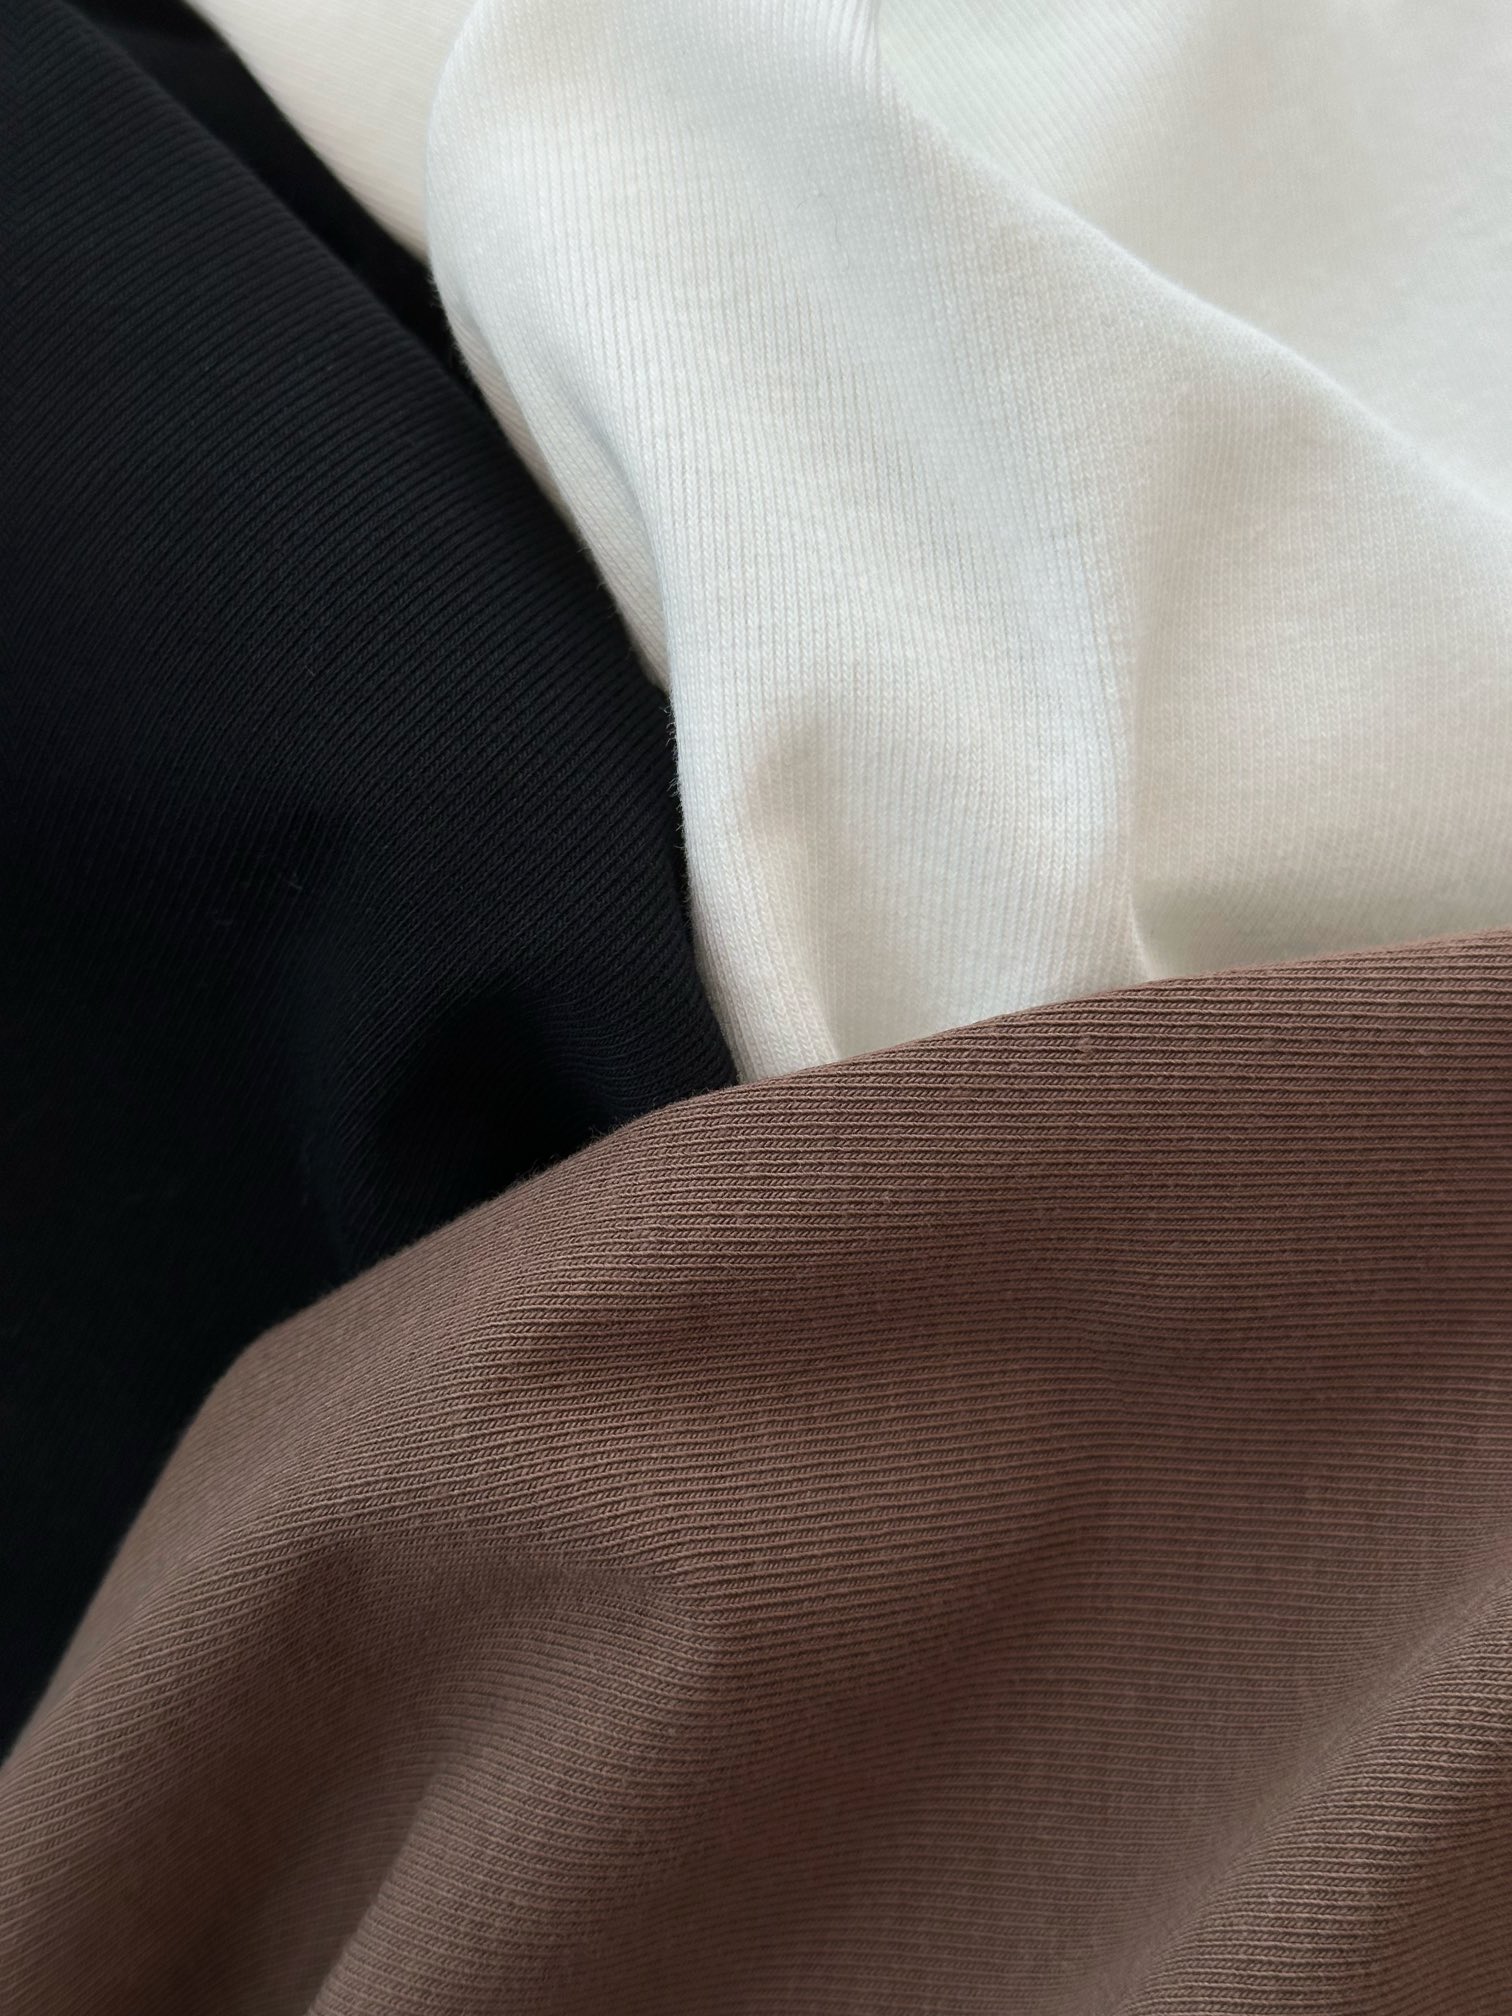 /新品发布U领吊带背心选用棉面料面料是温和亲和的肤感毛质细腻穿上身透气又舒适这个版型真的怎么穿都不会腻真